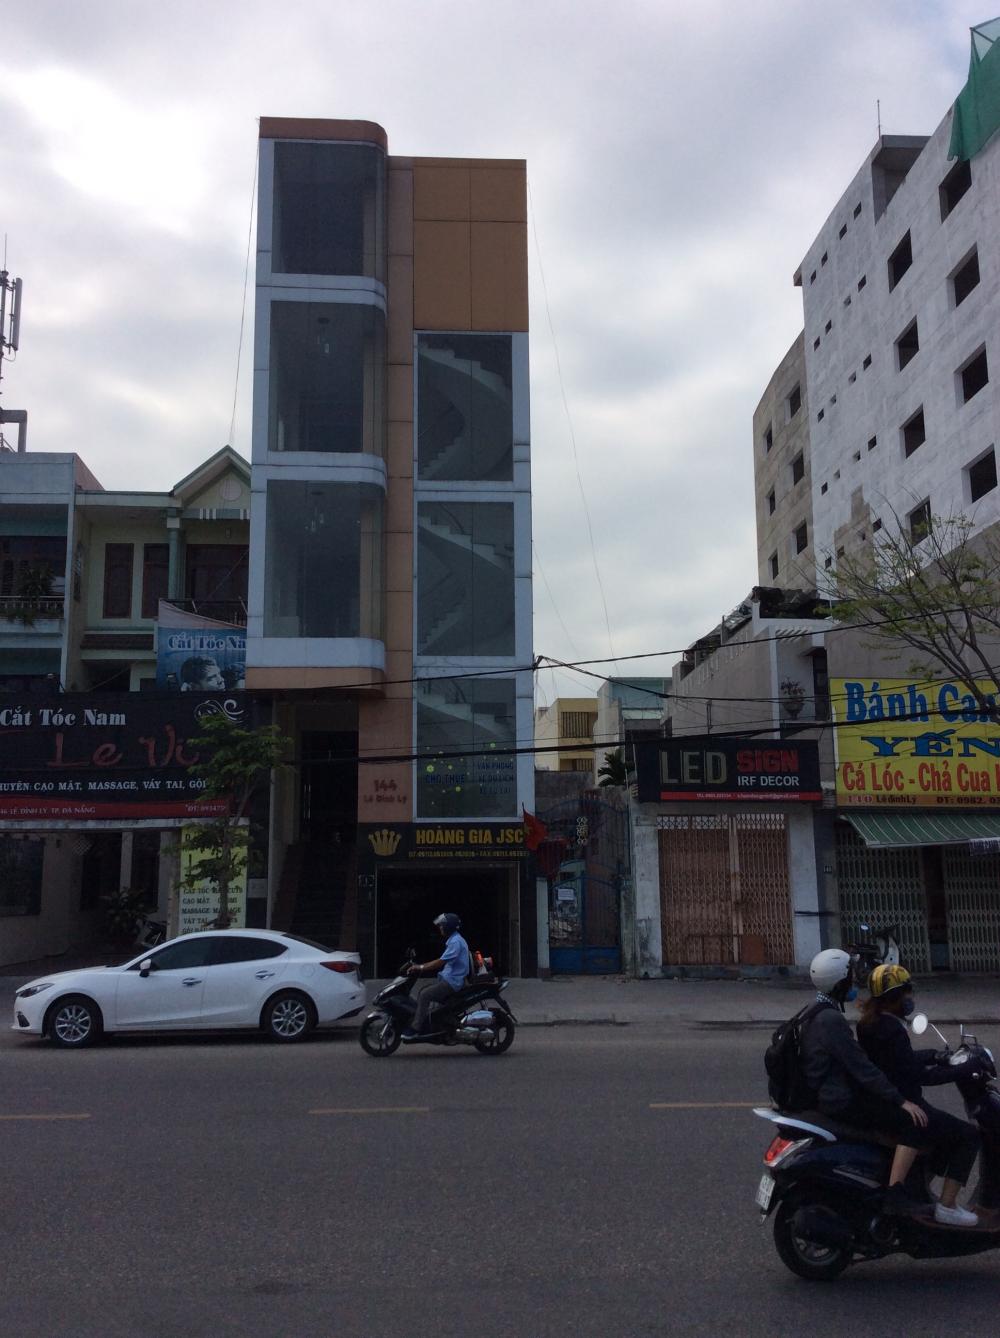 Cho thuê văn phòng Đà Nẵng, tòa nhà Hoàng Gia JSC, 10tr/th, 100m2, Lê Đình Lý 9098019